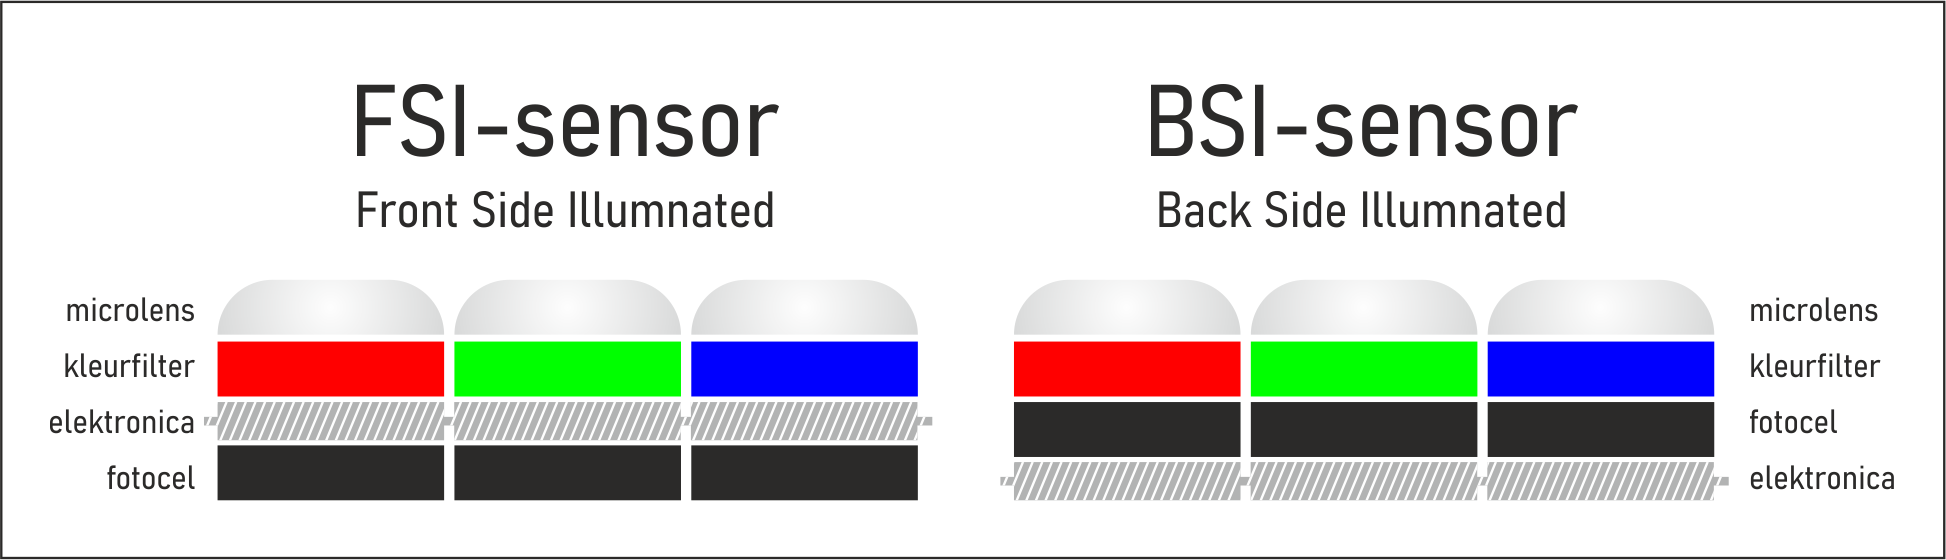 BSI-sensor